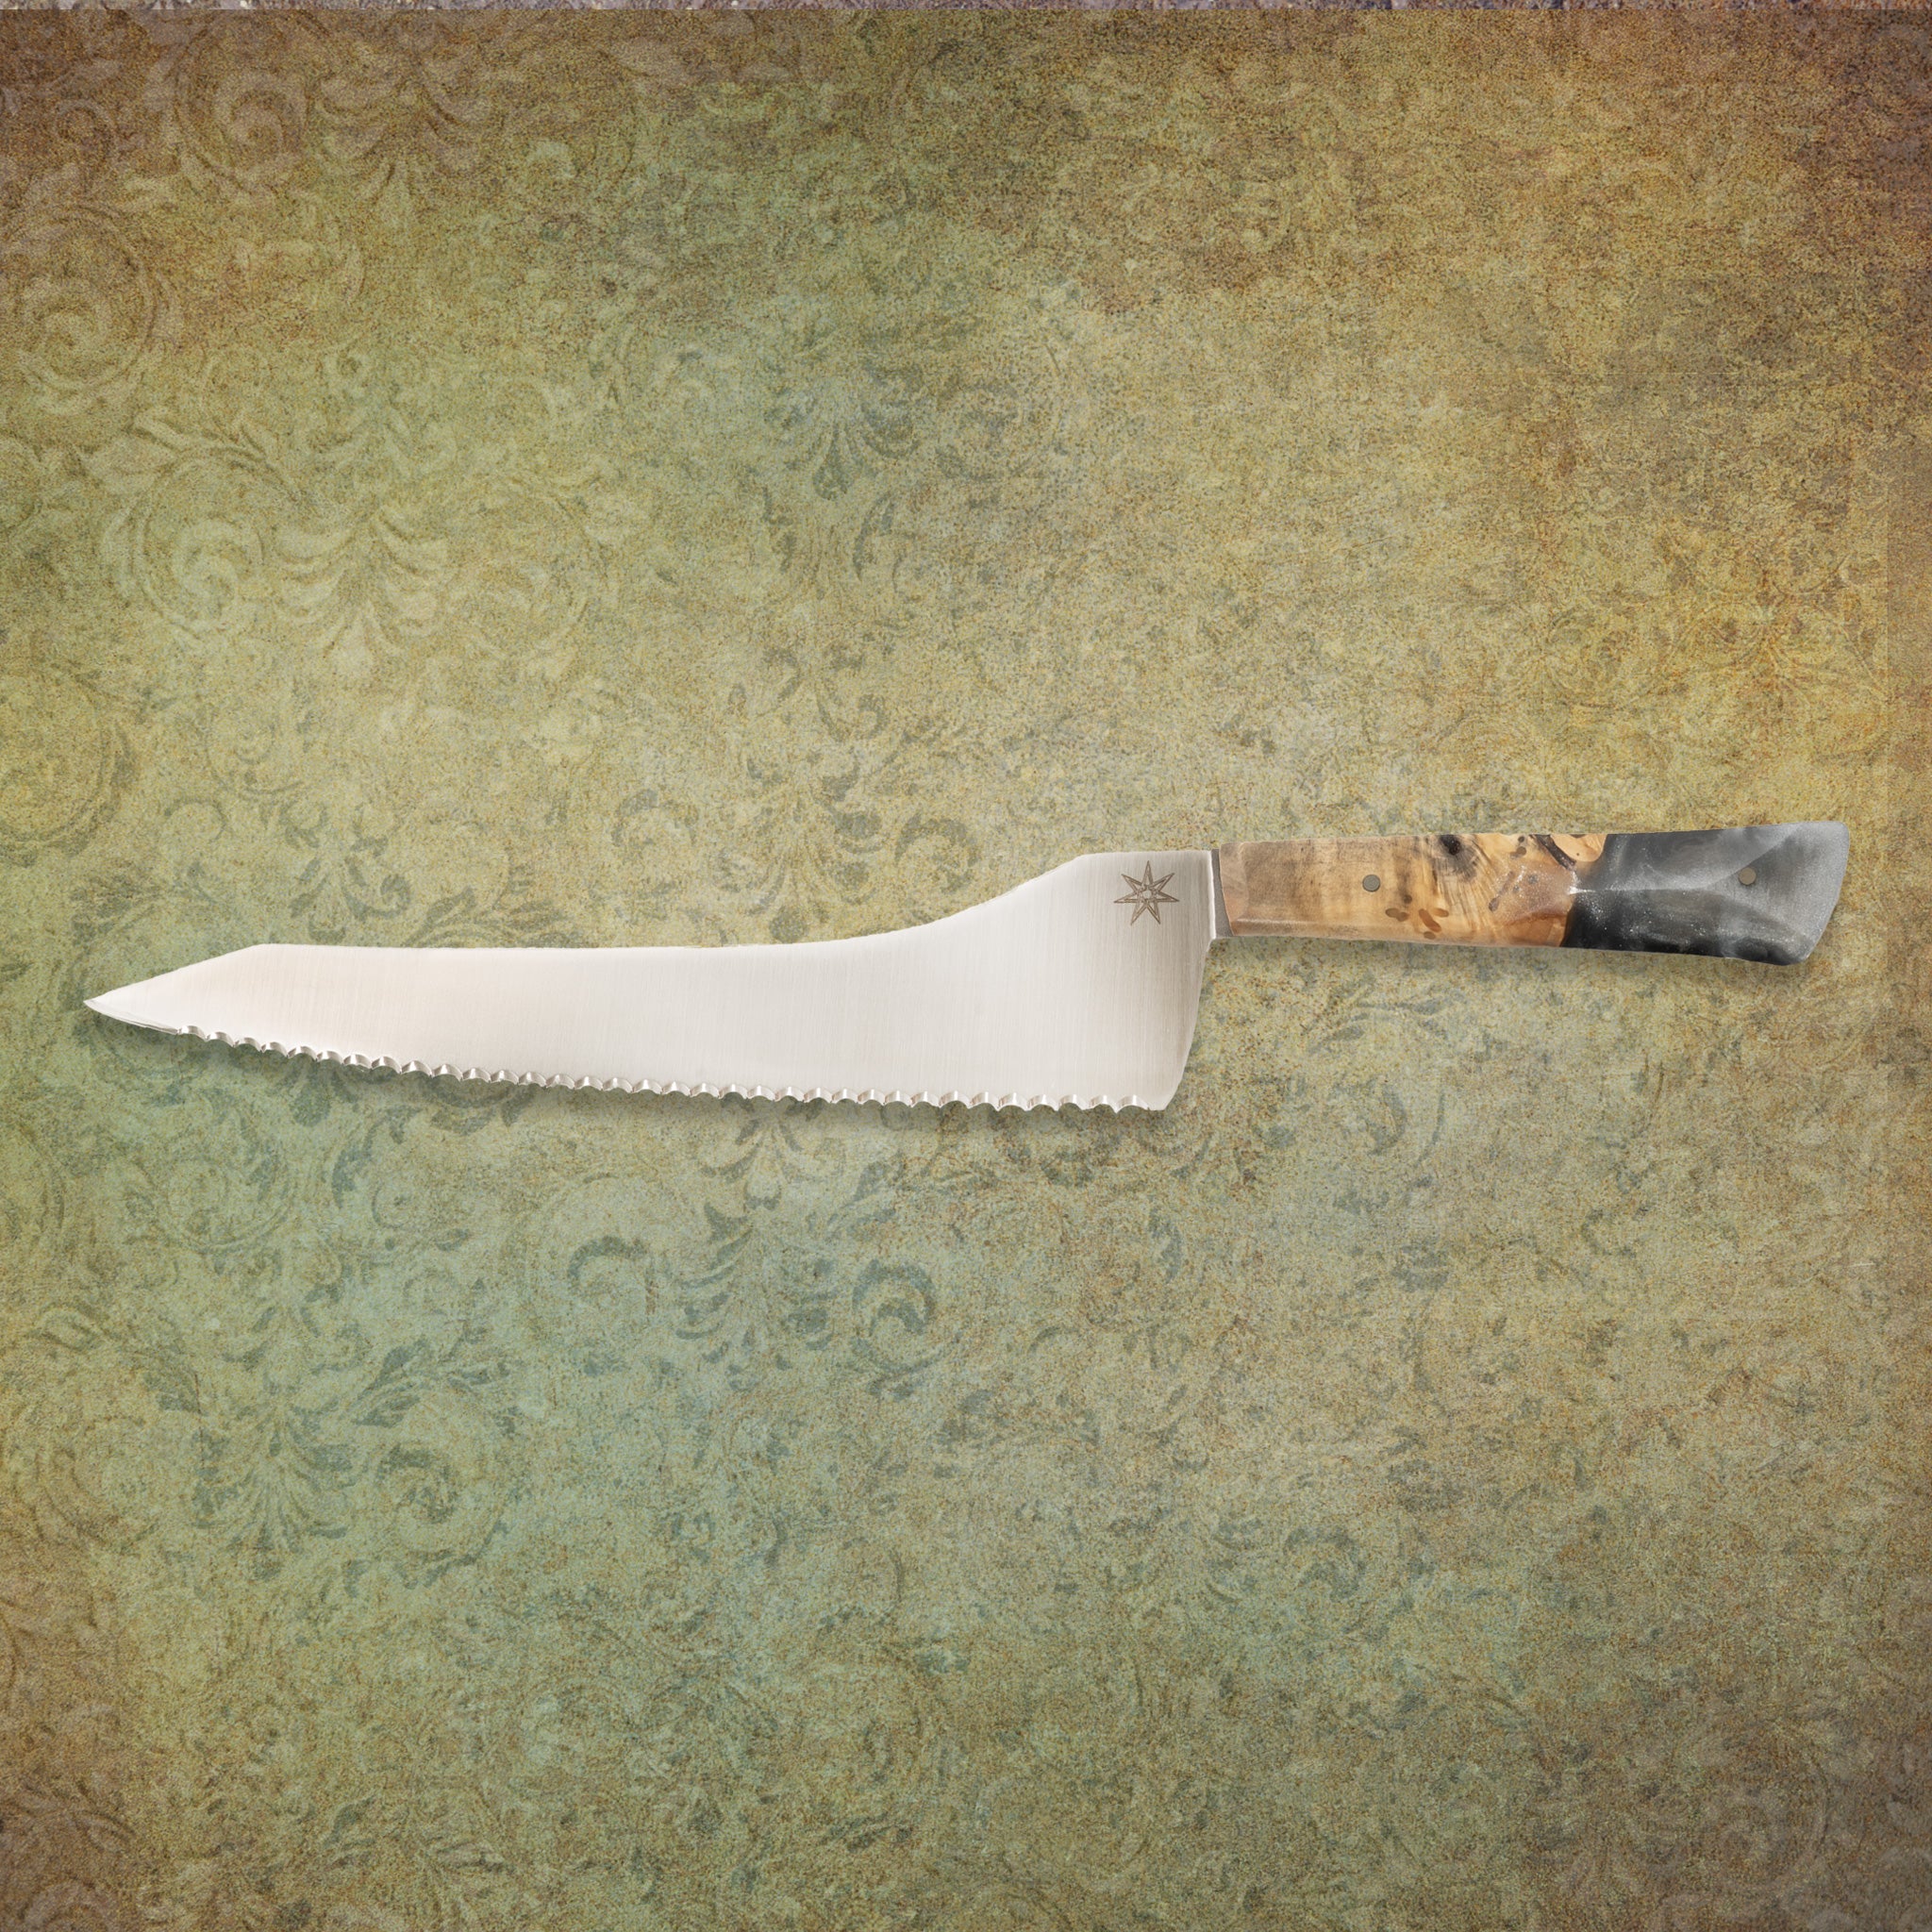 9" Bread Knife - Ag 47